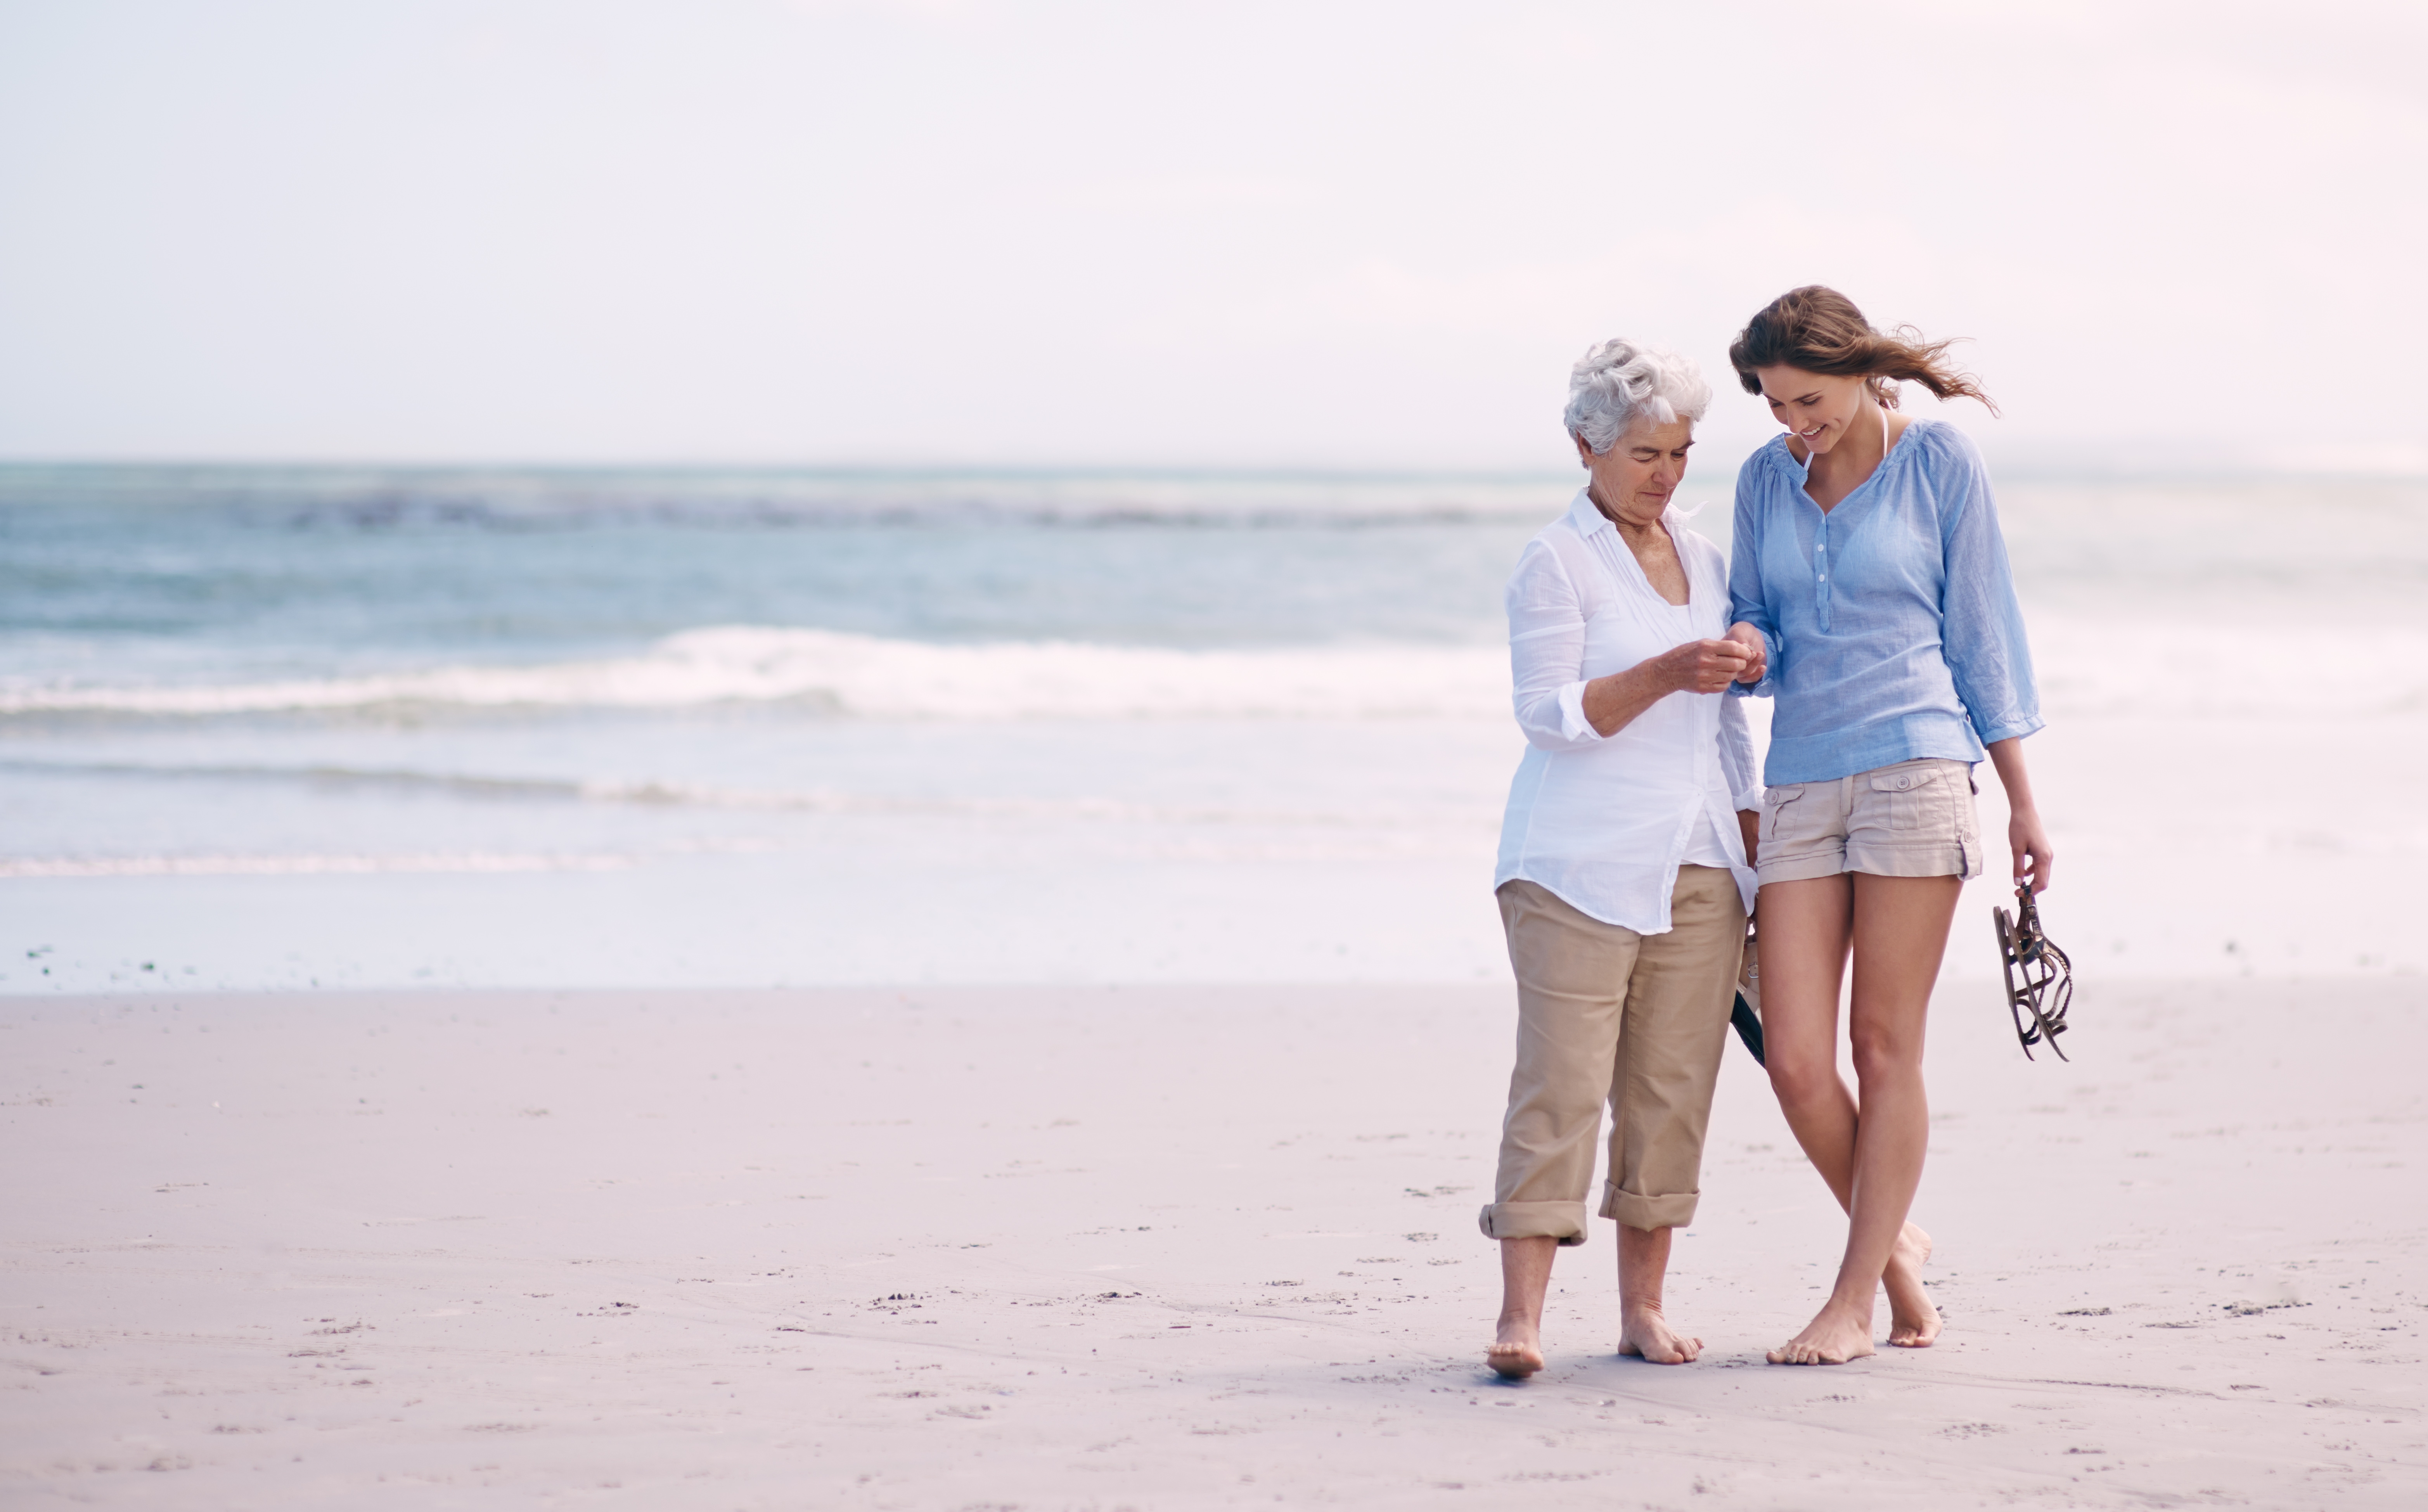 Mère et fille passant du bon temps à la plage | Source : Shutterstock